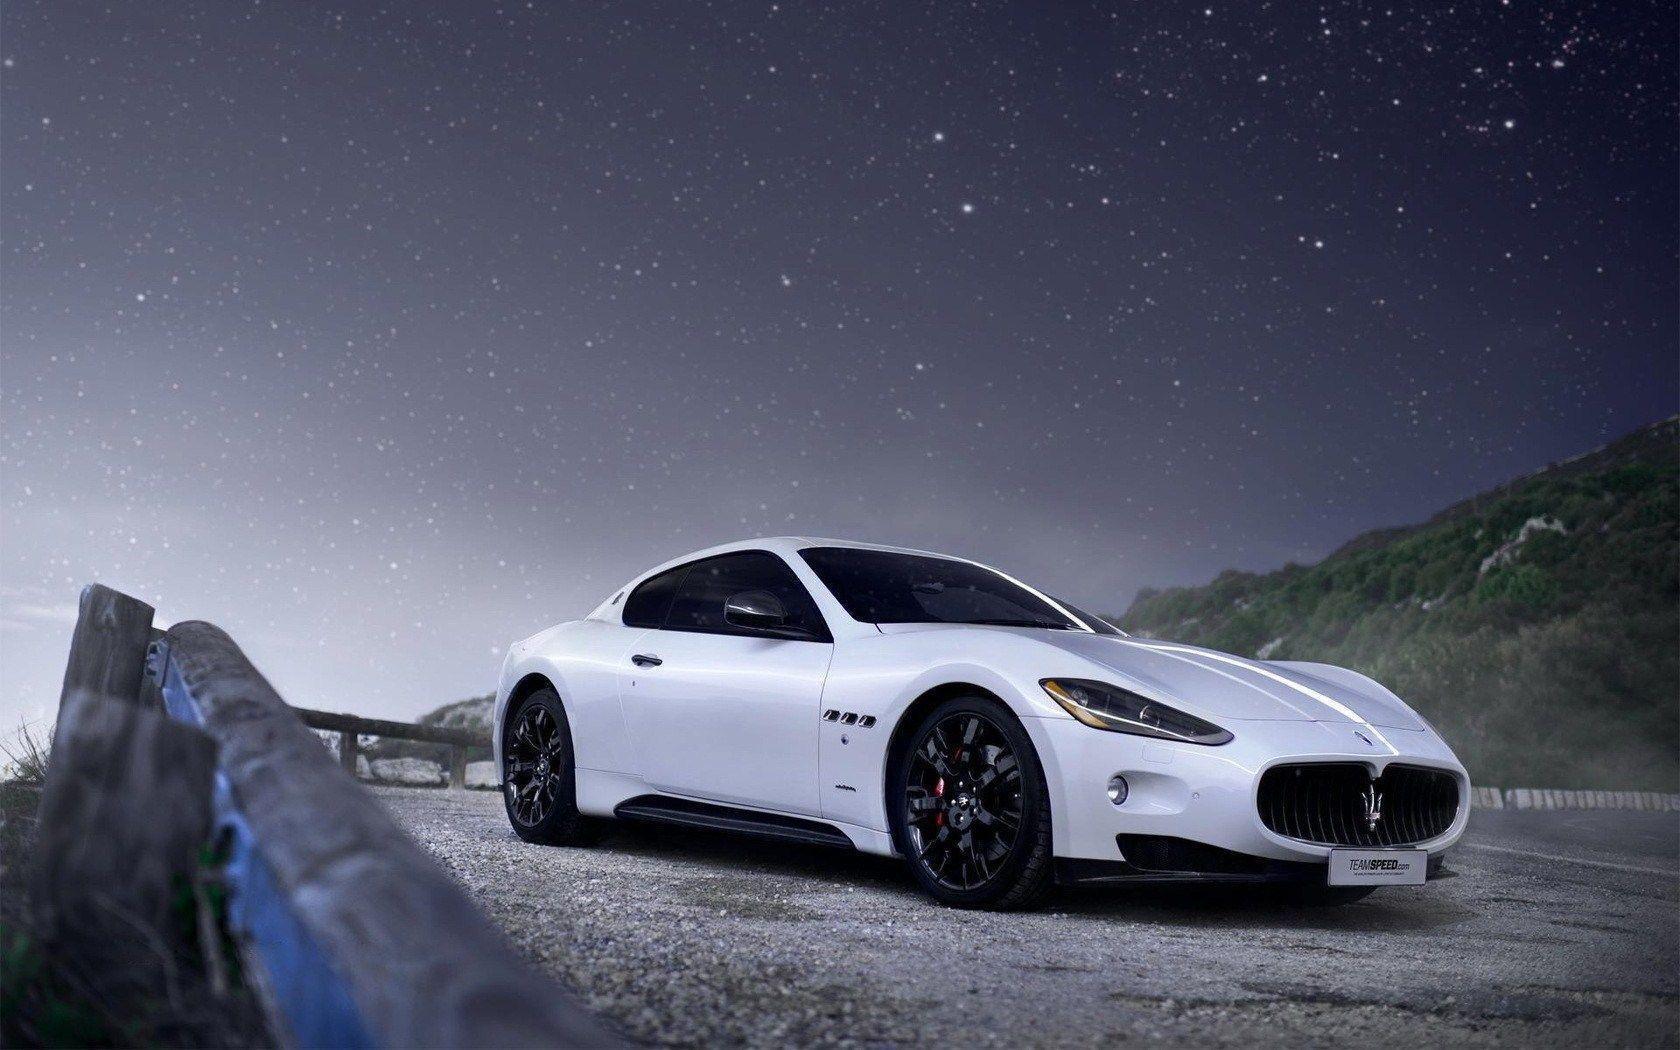 White Maserati Granturismo Strars Night Road HD Wallpaper